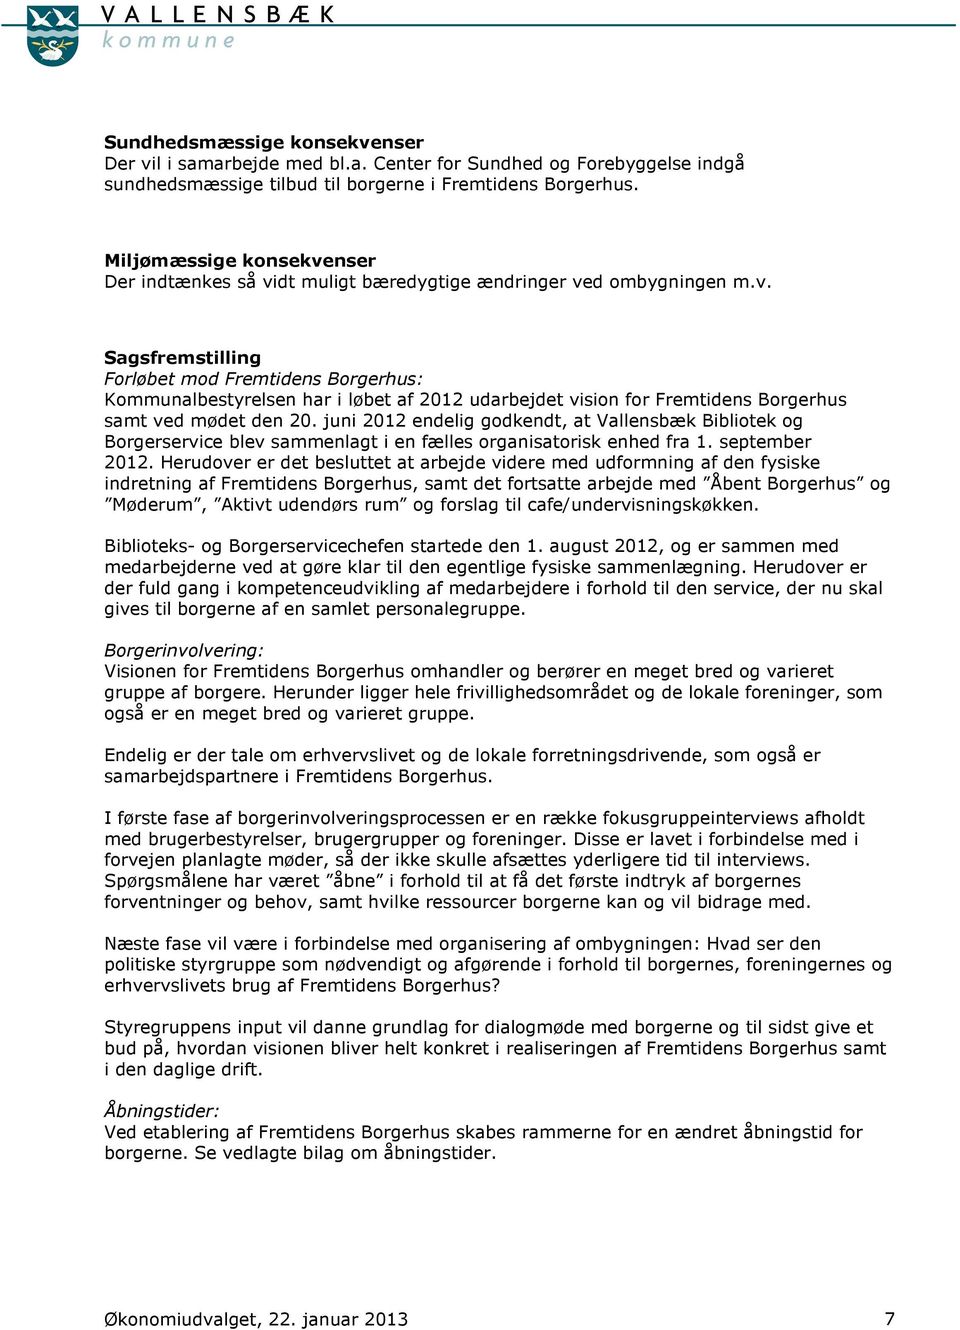 juni 2012 endelig godkendt, at Vallensbæk Bibliotek og Borgerservice blev sammenlagt i en fælles organisatorisk enhed fra 1. september 2012.